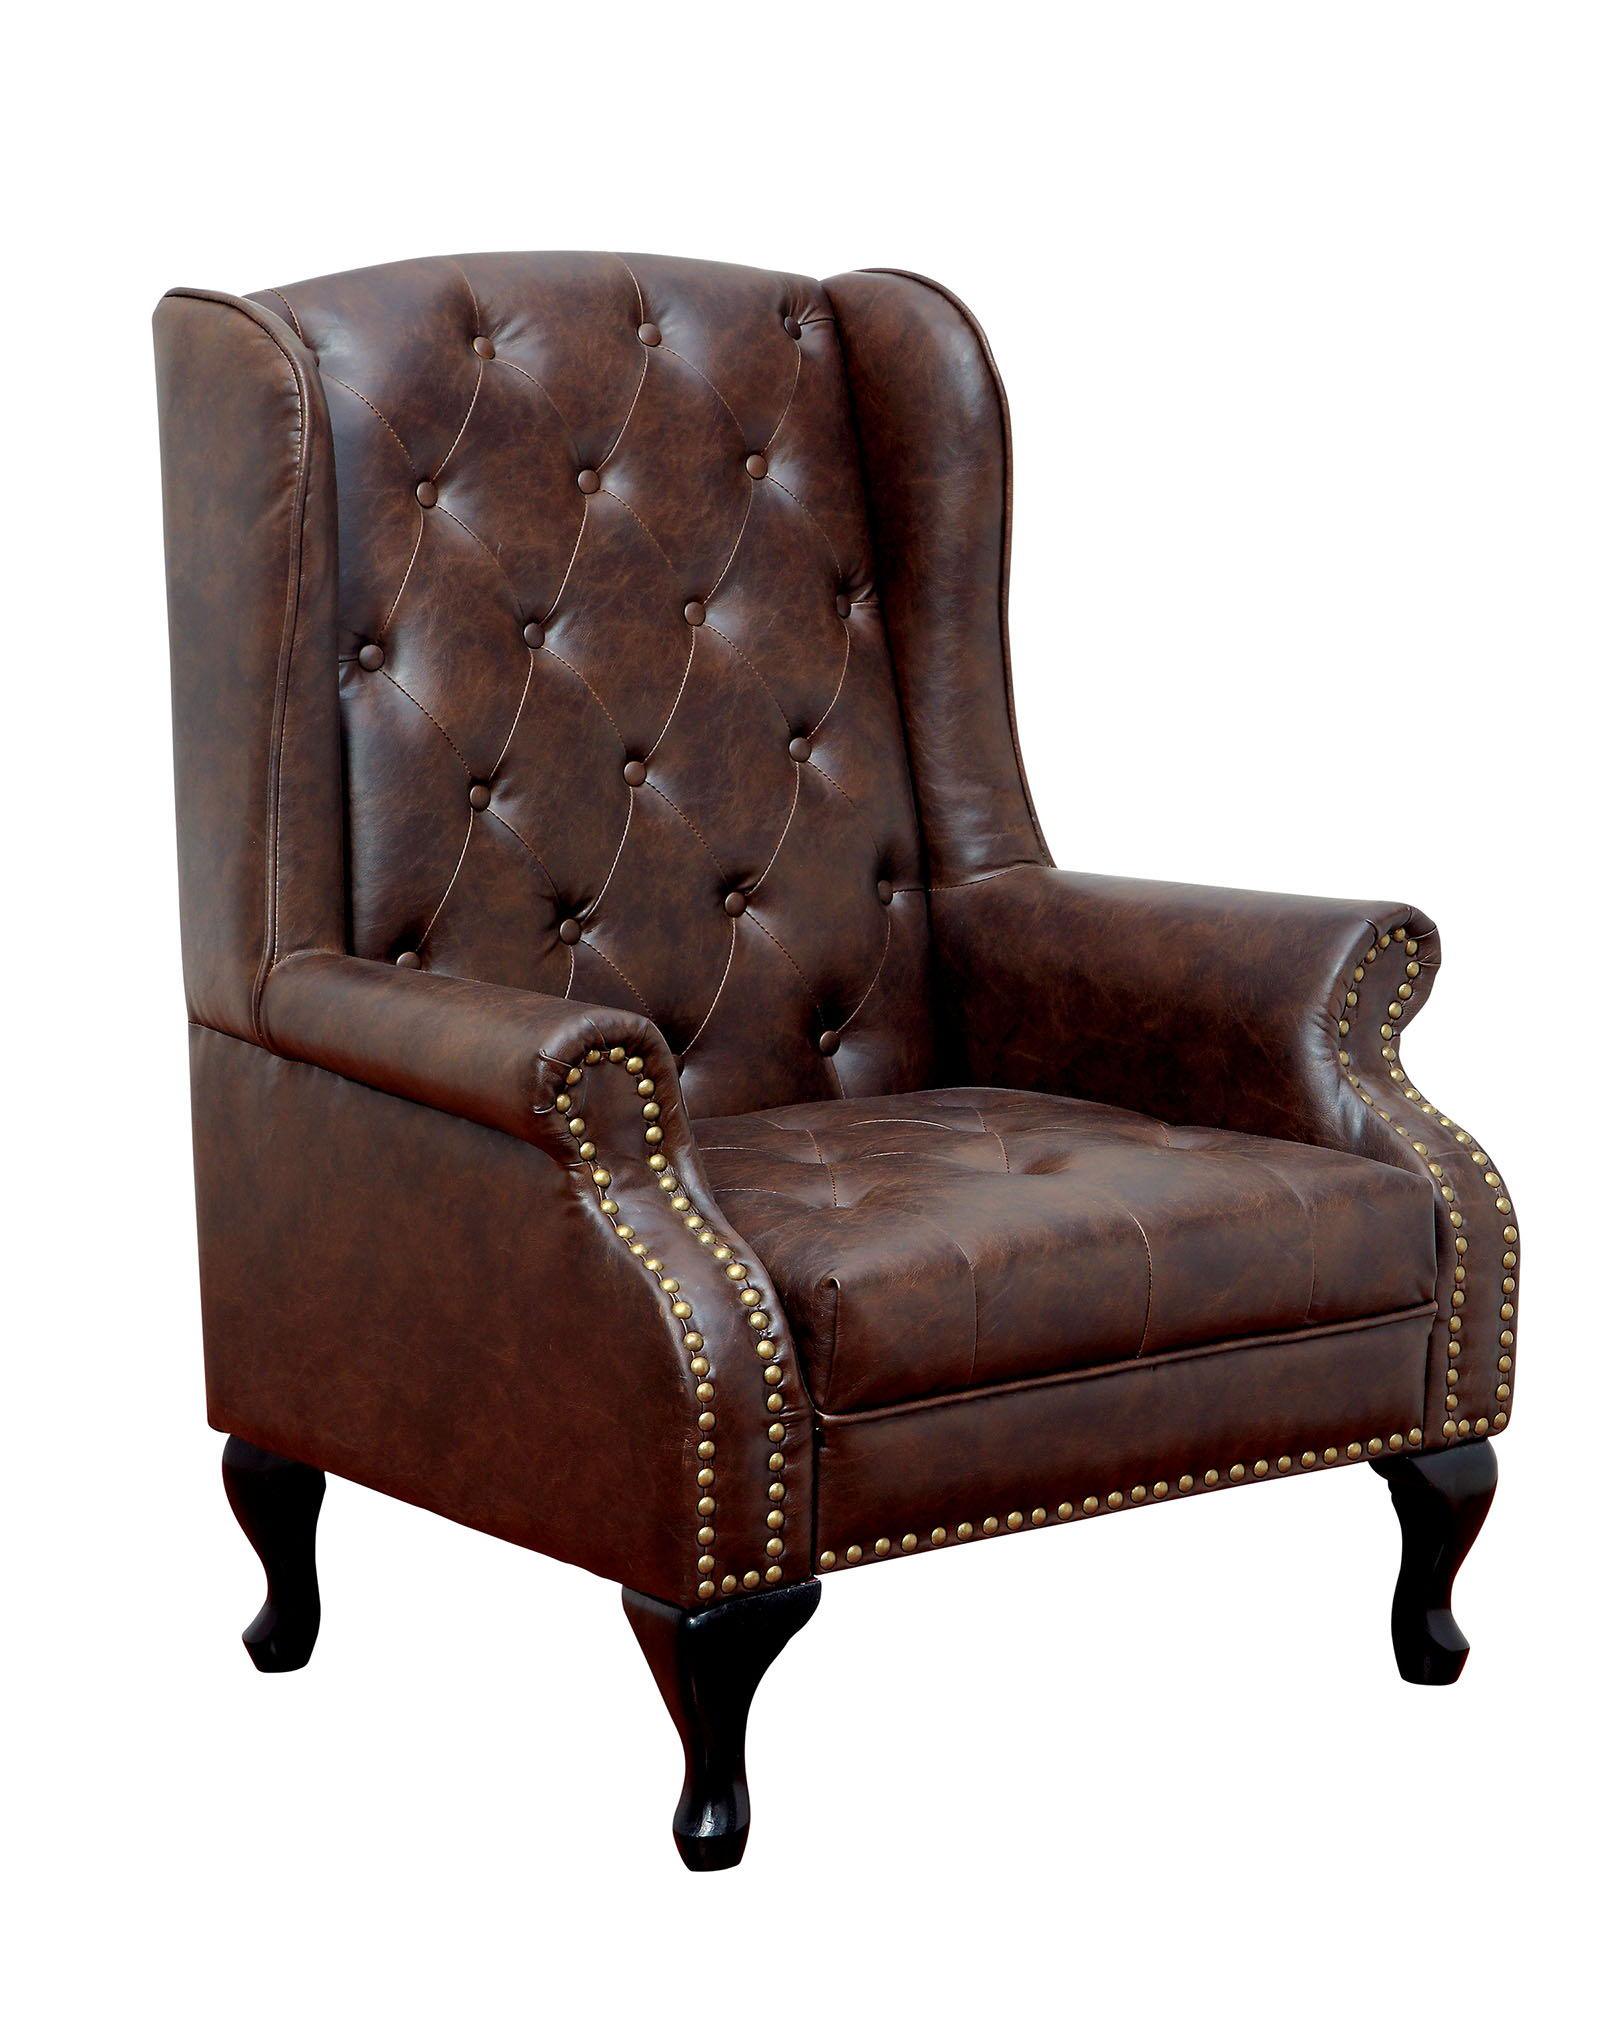 Furniture of America - Vaugh - Accent Chair - Rustic Brown - 5th Avenue Furniture